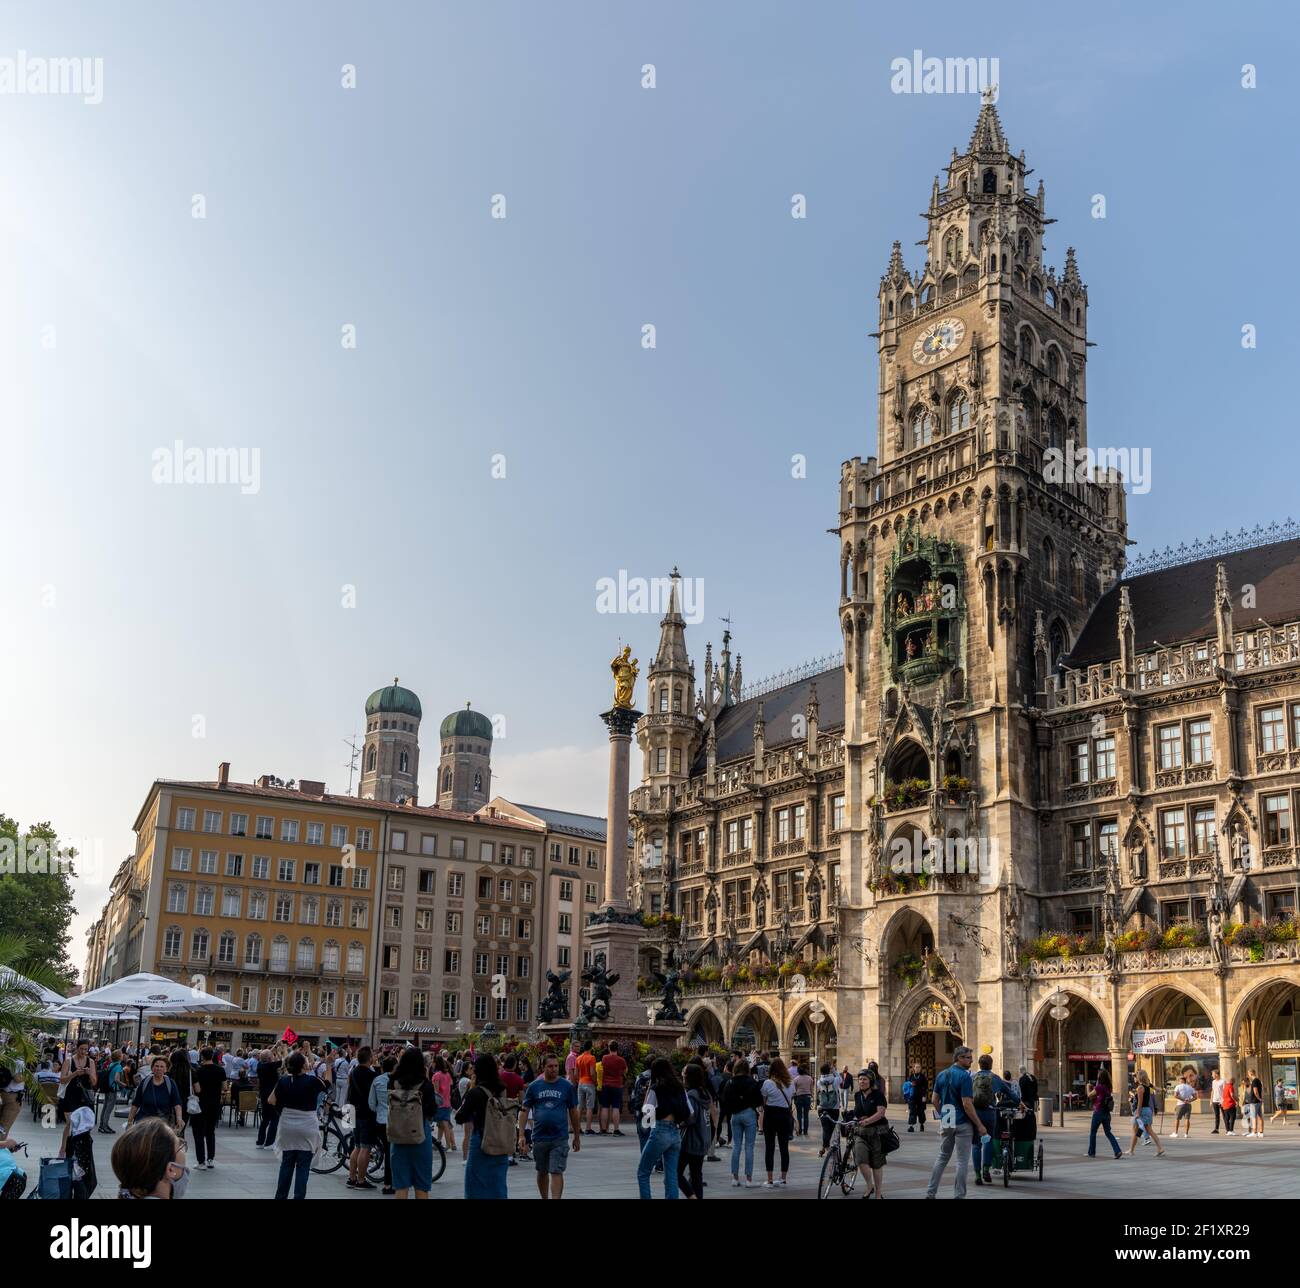 Les touristes apprécient la sonnerie Glockenspiel de cloches à l'ancien Hôtel de ville de Marienplatz à Munich Banque D'Images